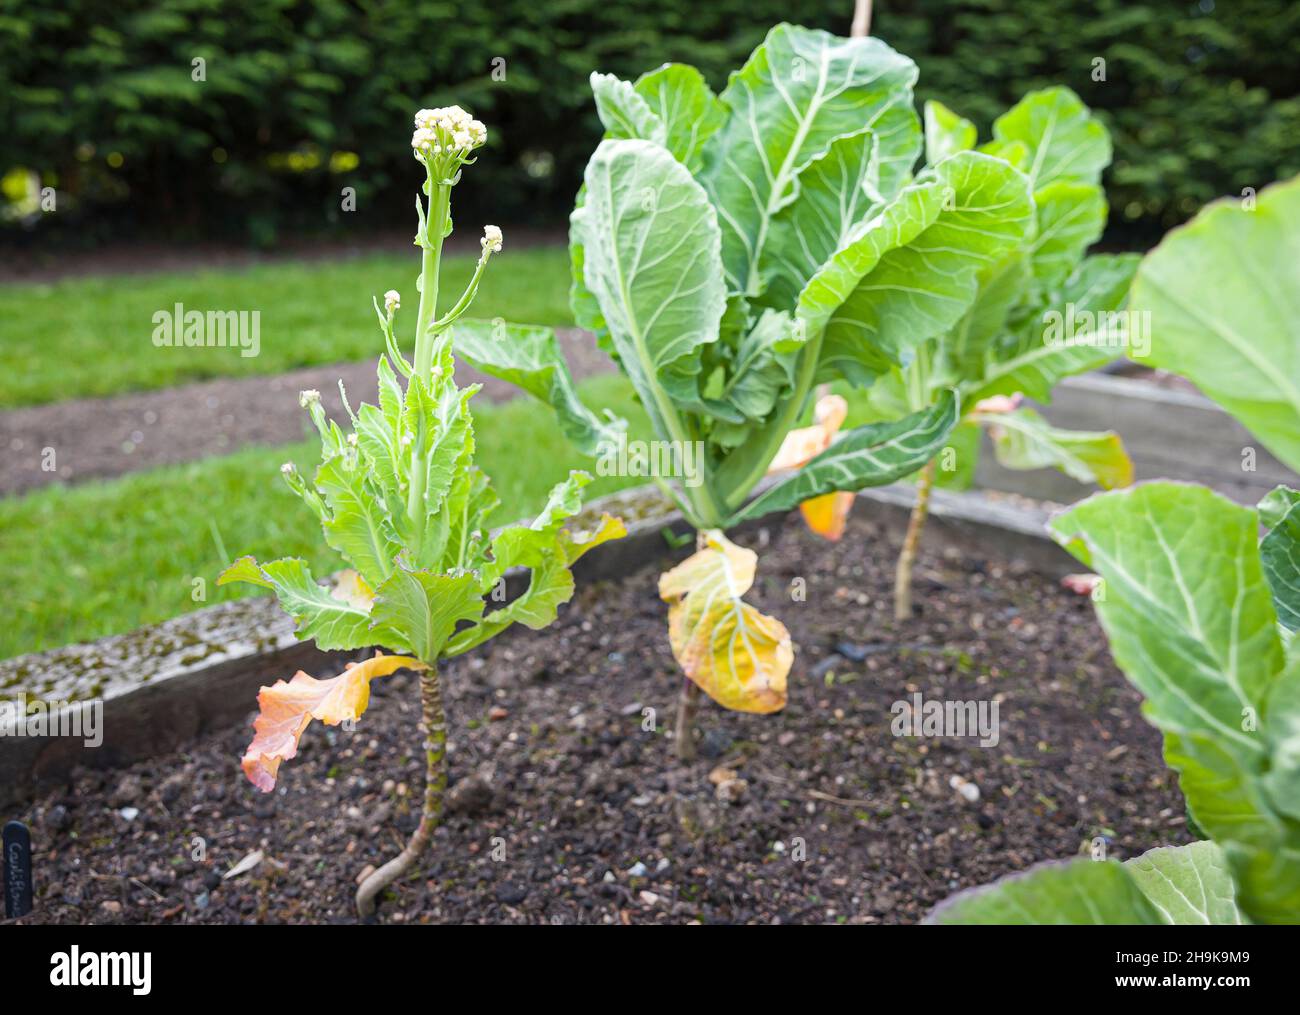 Choux-fleurs échoués (bourgeons aveugles) poussant dans un jardin.Défaillance végétale ou végétale, Royaume-Uni Banque D'Images